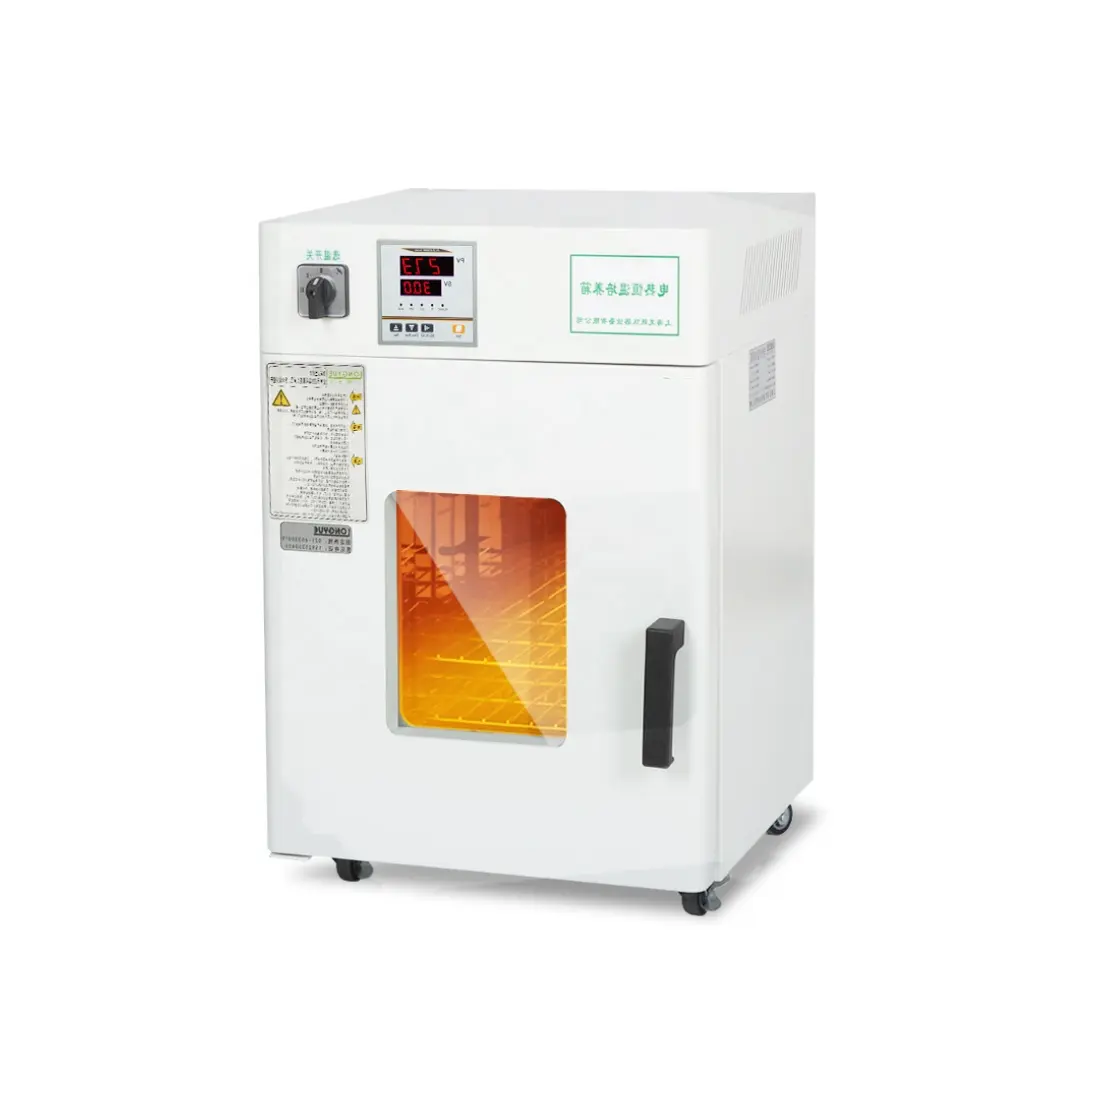 Forno di essiccazione della macchina dell'incubatrice microbica verticale dei batteri dell'incubatrice del laboratorio di WEIAI 30L LI-9052